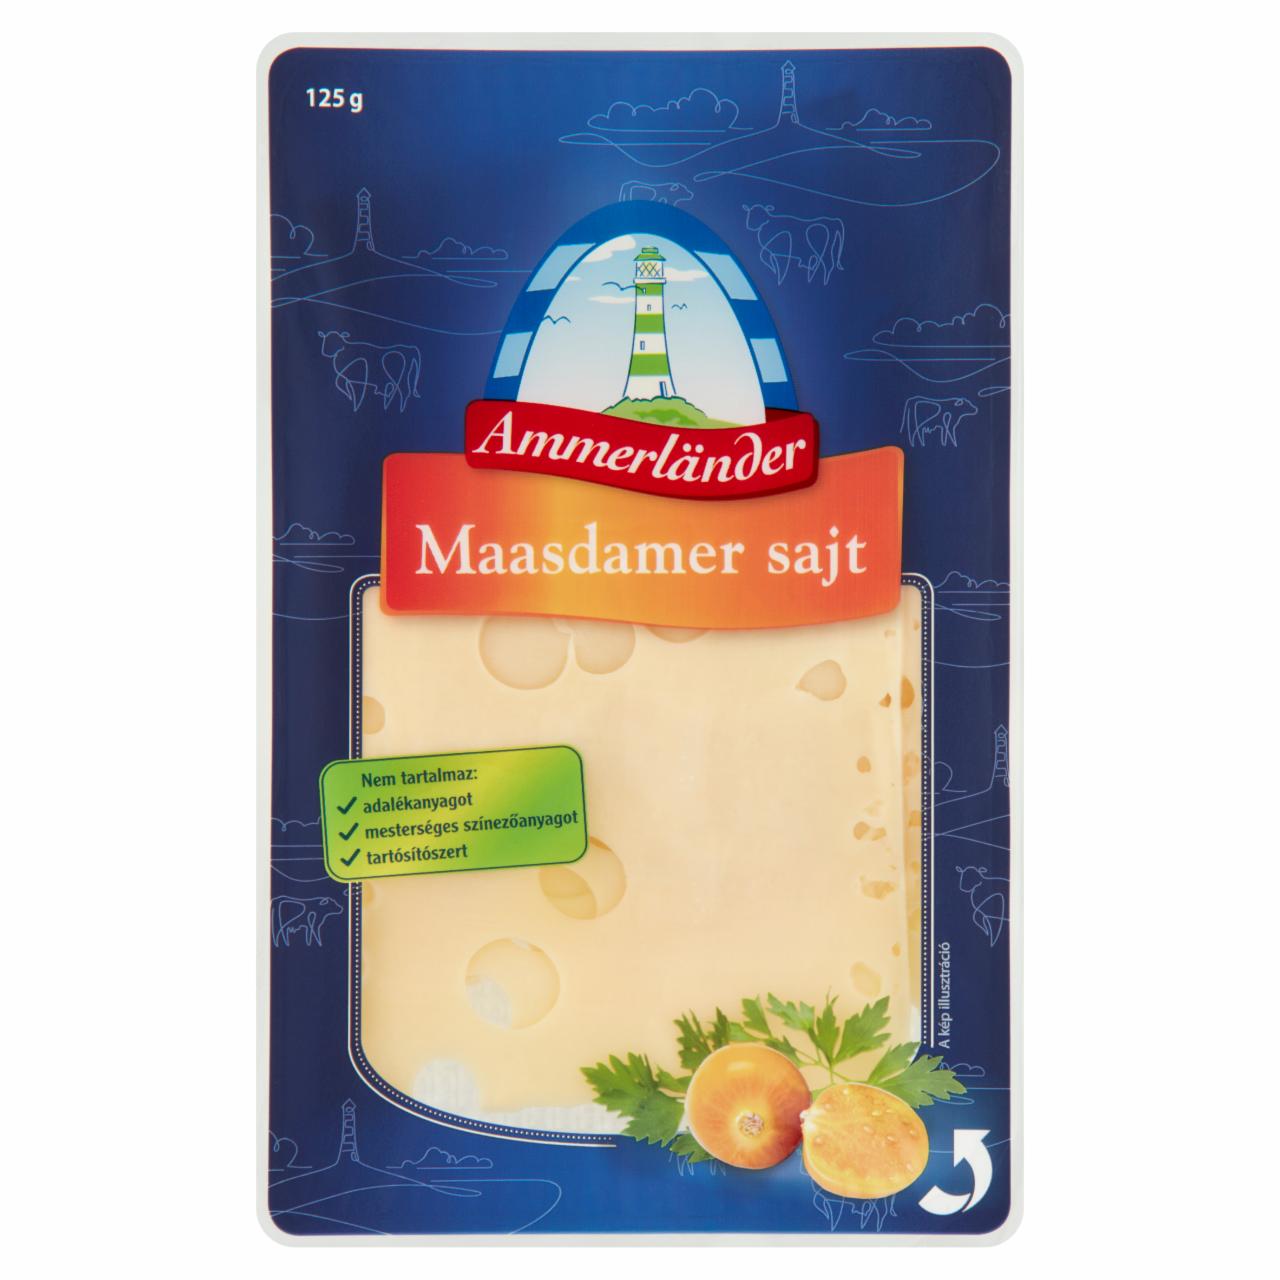 Képek - Ammerländer szeletelt maasdamer sajt 125 g